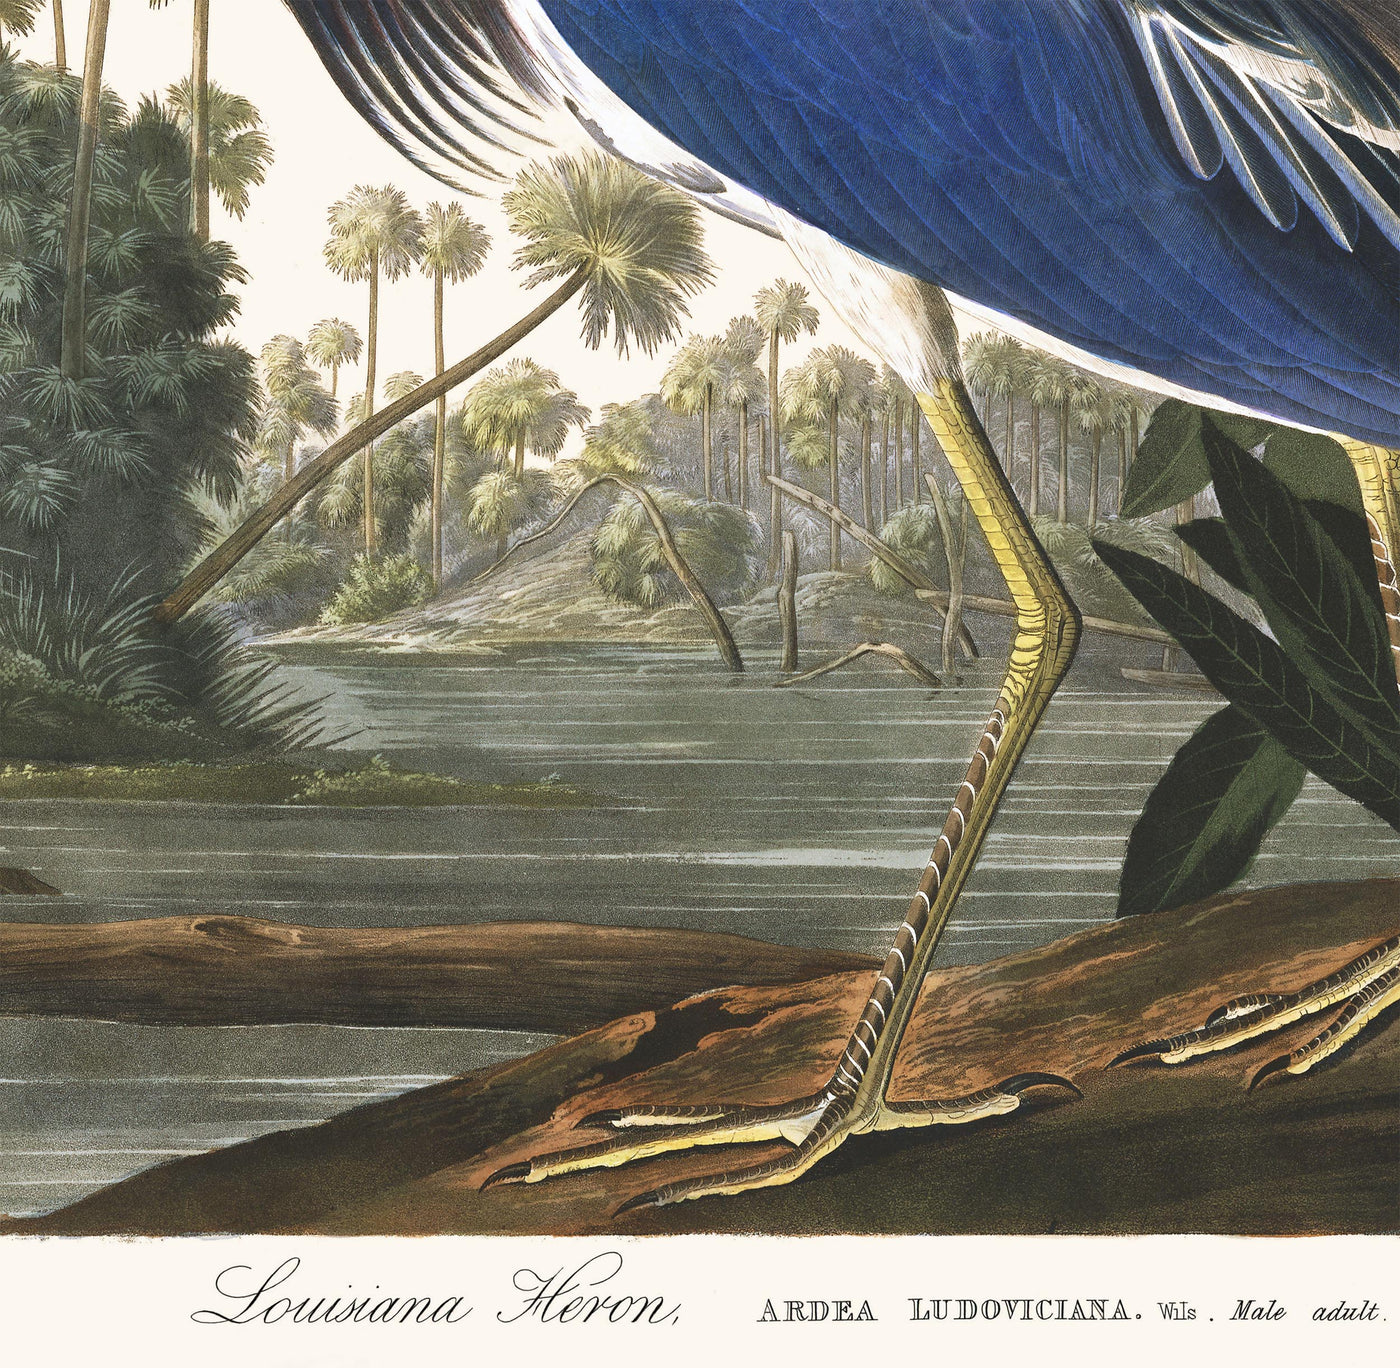 Héron de Louisiane par John James Audobon, 1827 - Beaux-arts personnalisés